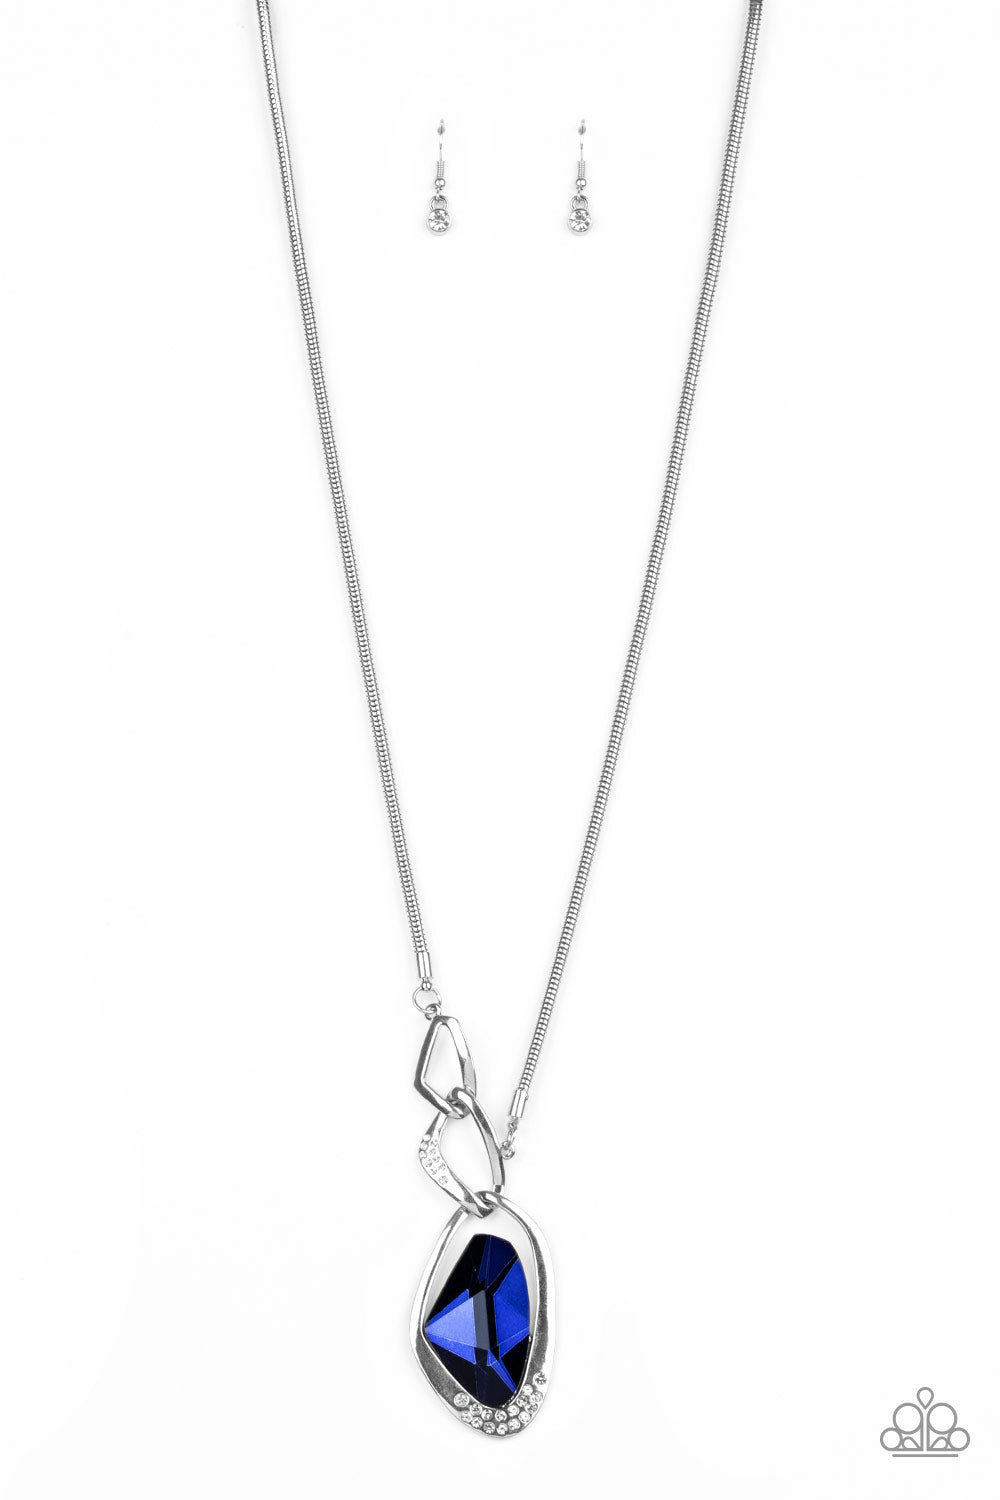 Optical Opulence Blue Paparazzi Necklaces Cashmere Pink Jewels - Cashmere Pink Jewels & Accessories, Cashmere Pink Jewels & Accessories - Paparazzi